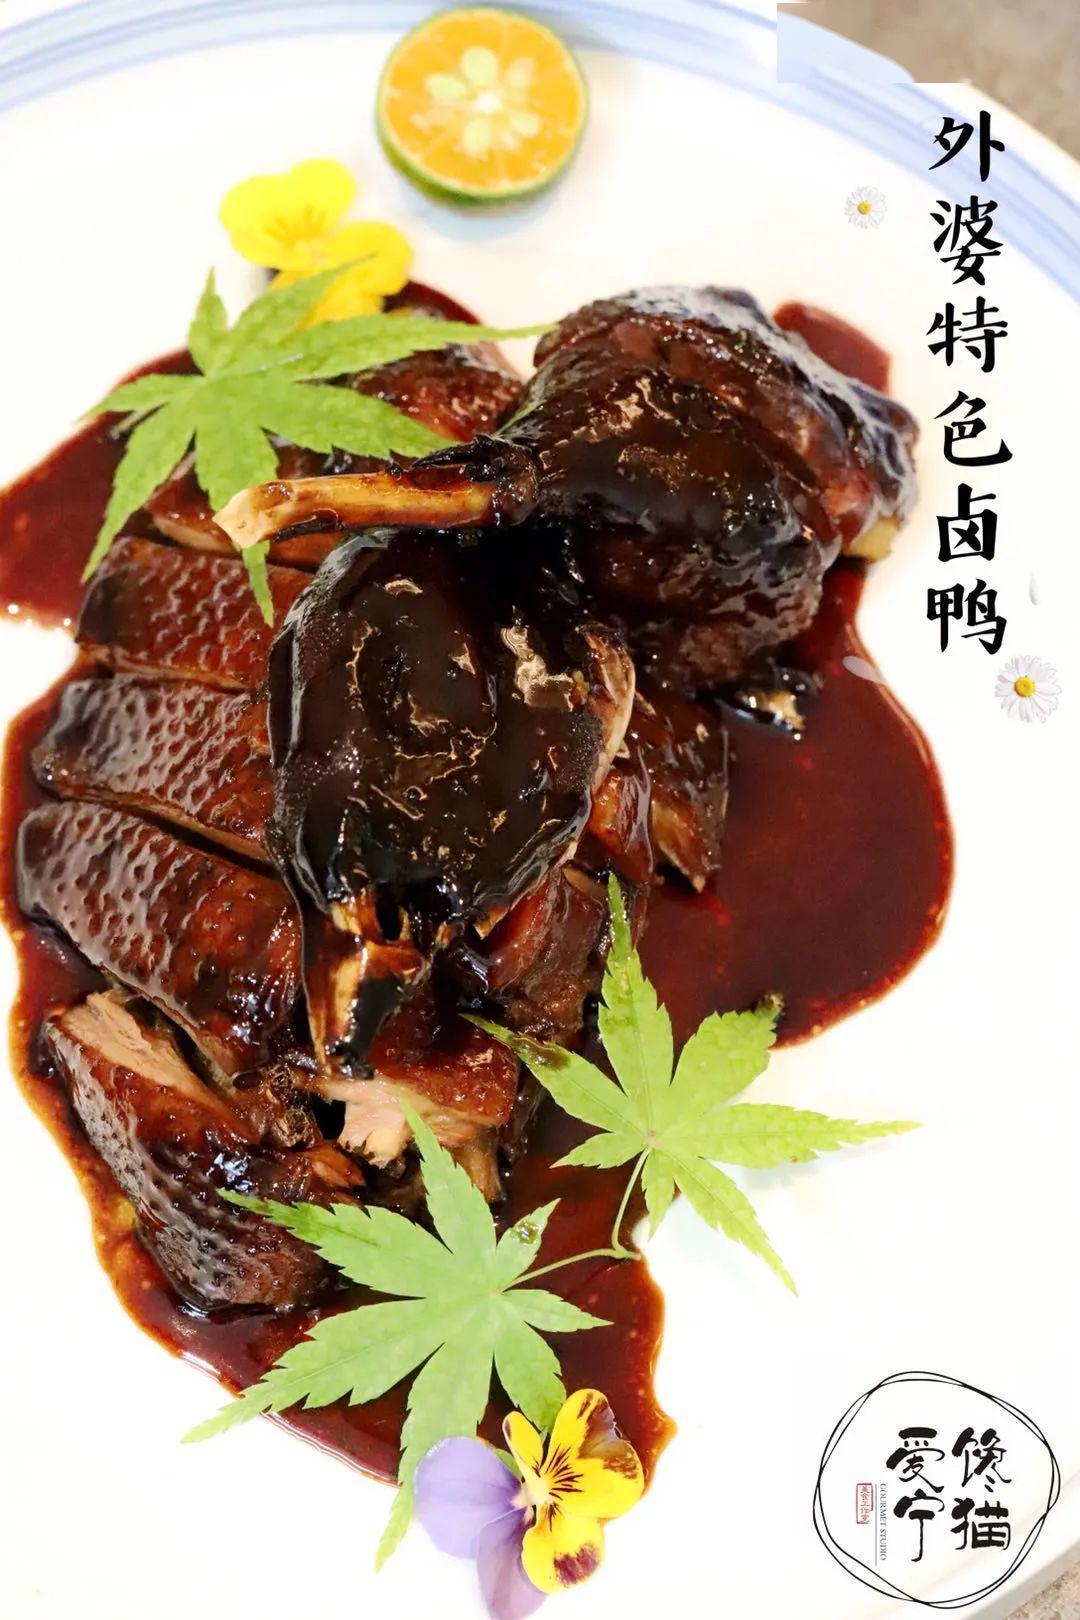 【爱宁】庄里这家g20大厨掌勺的杭帮菜,鲍鱼东坡肉实力撩胃~免费吃!